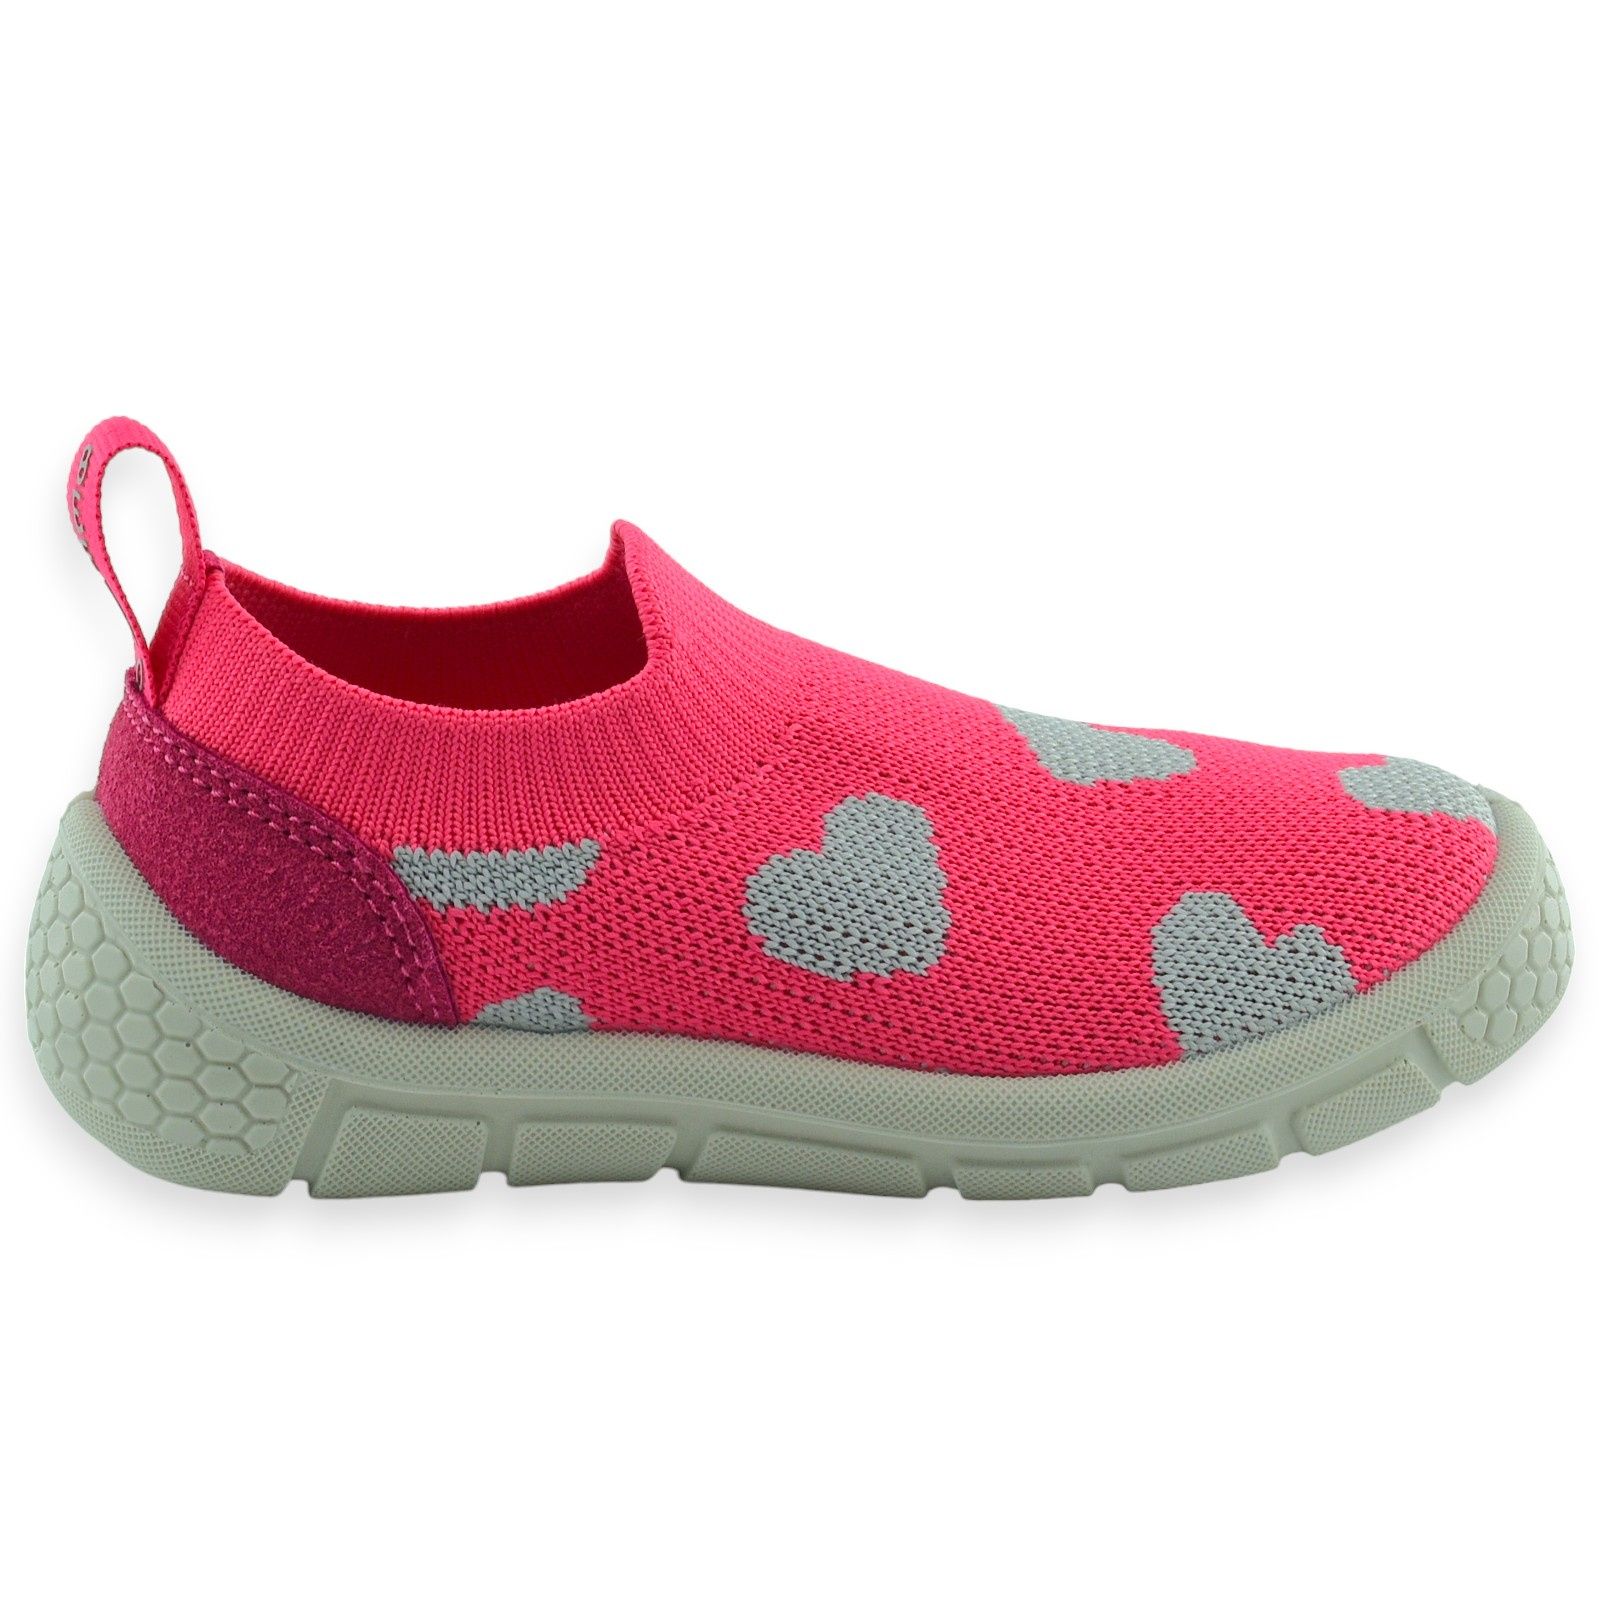 Dziewczęce wsuwane buty sportowe różowe Befado 102X019 Honey  |r.24-30